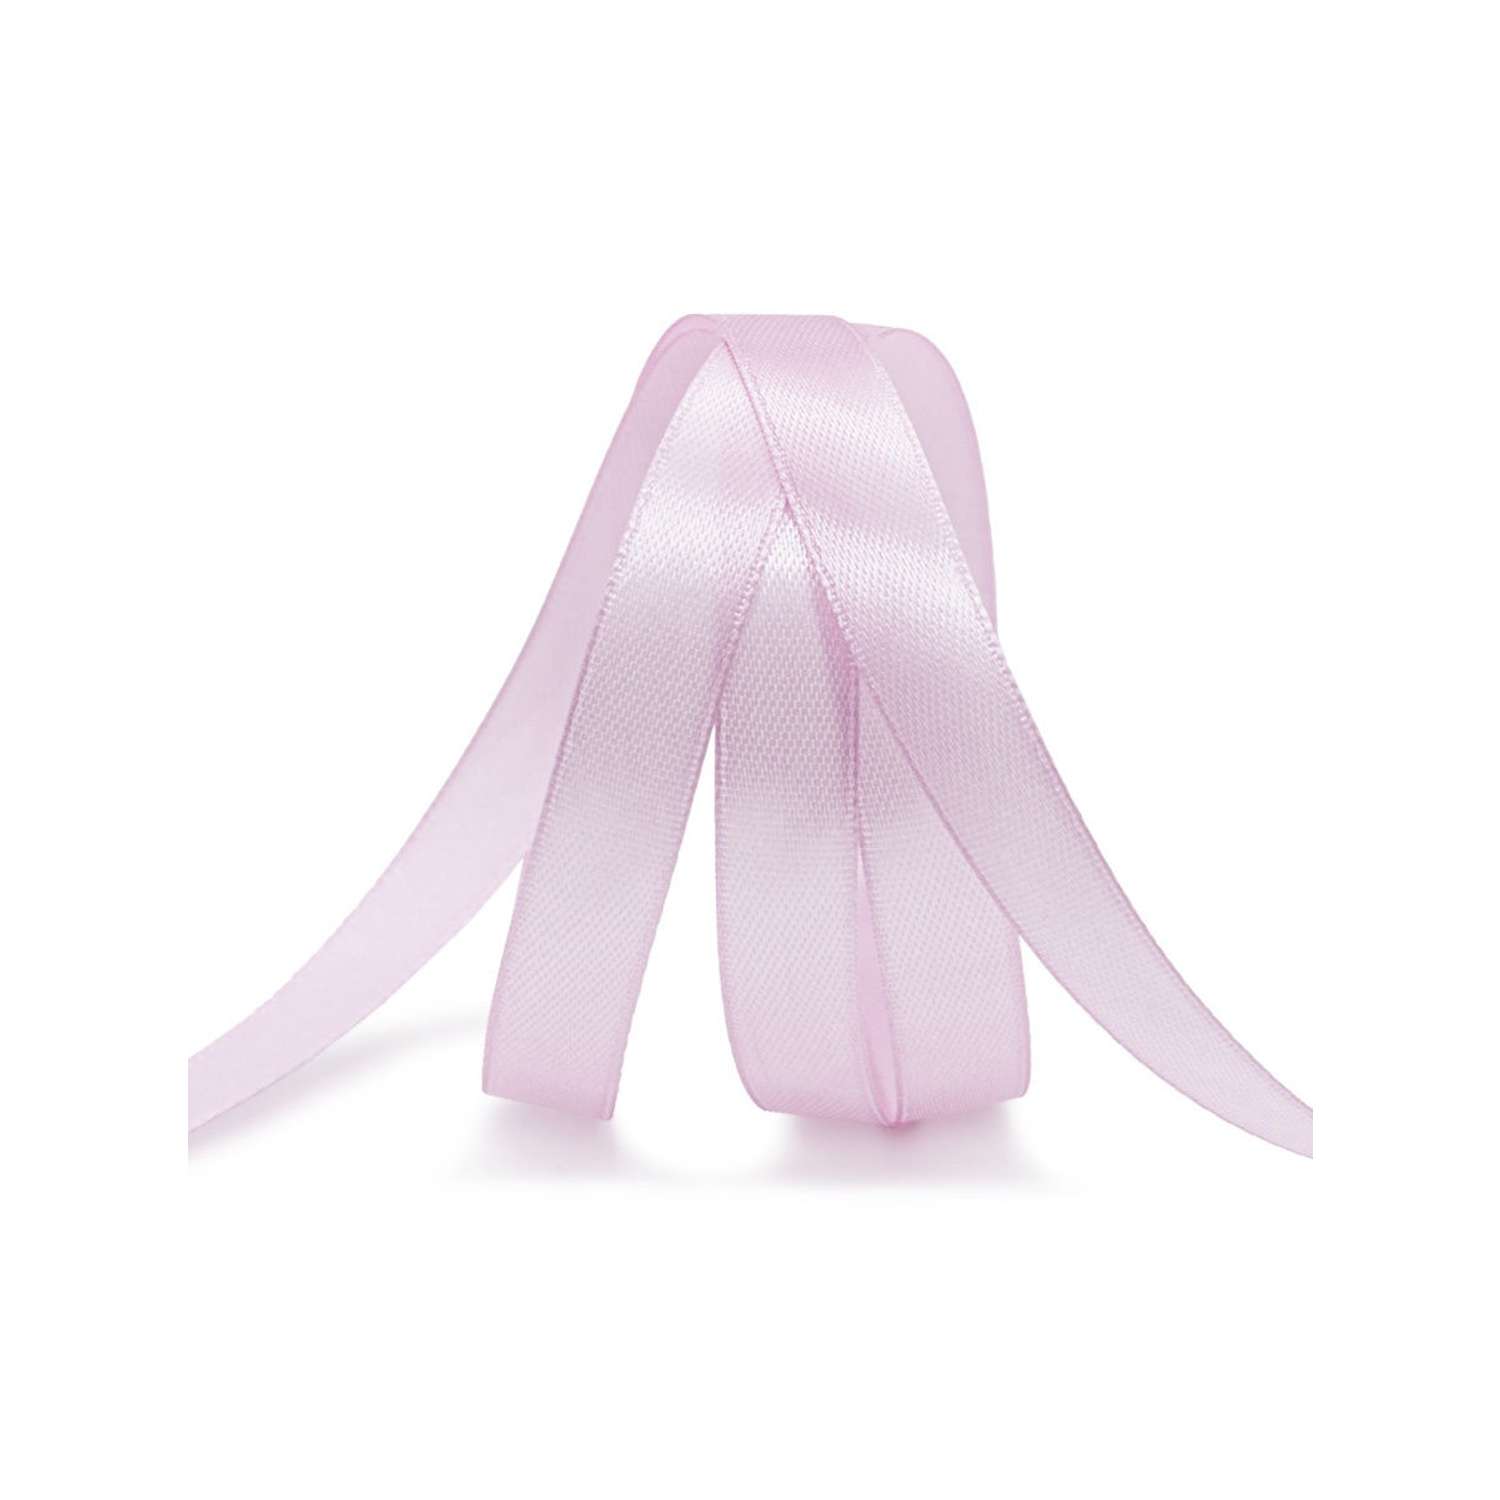 Лента Айрис атласная упаковочная флористическая 1.2 см 22.86 м 144 розово - сиреневый - фото 3